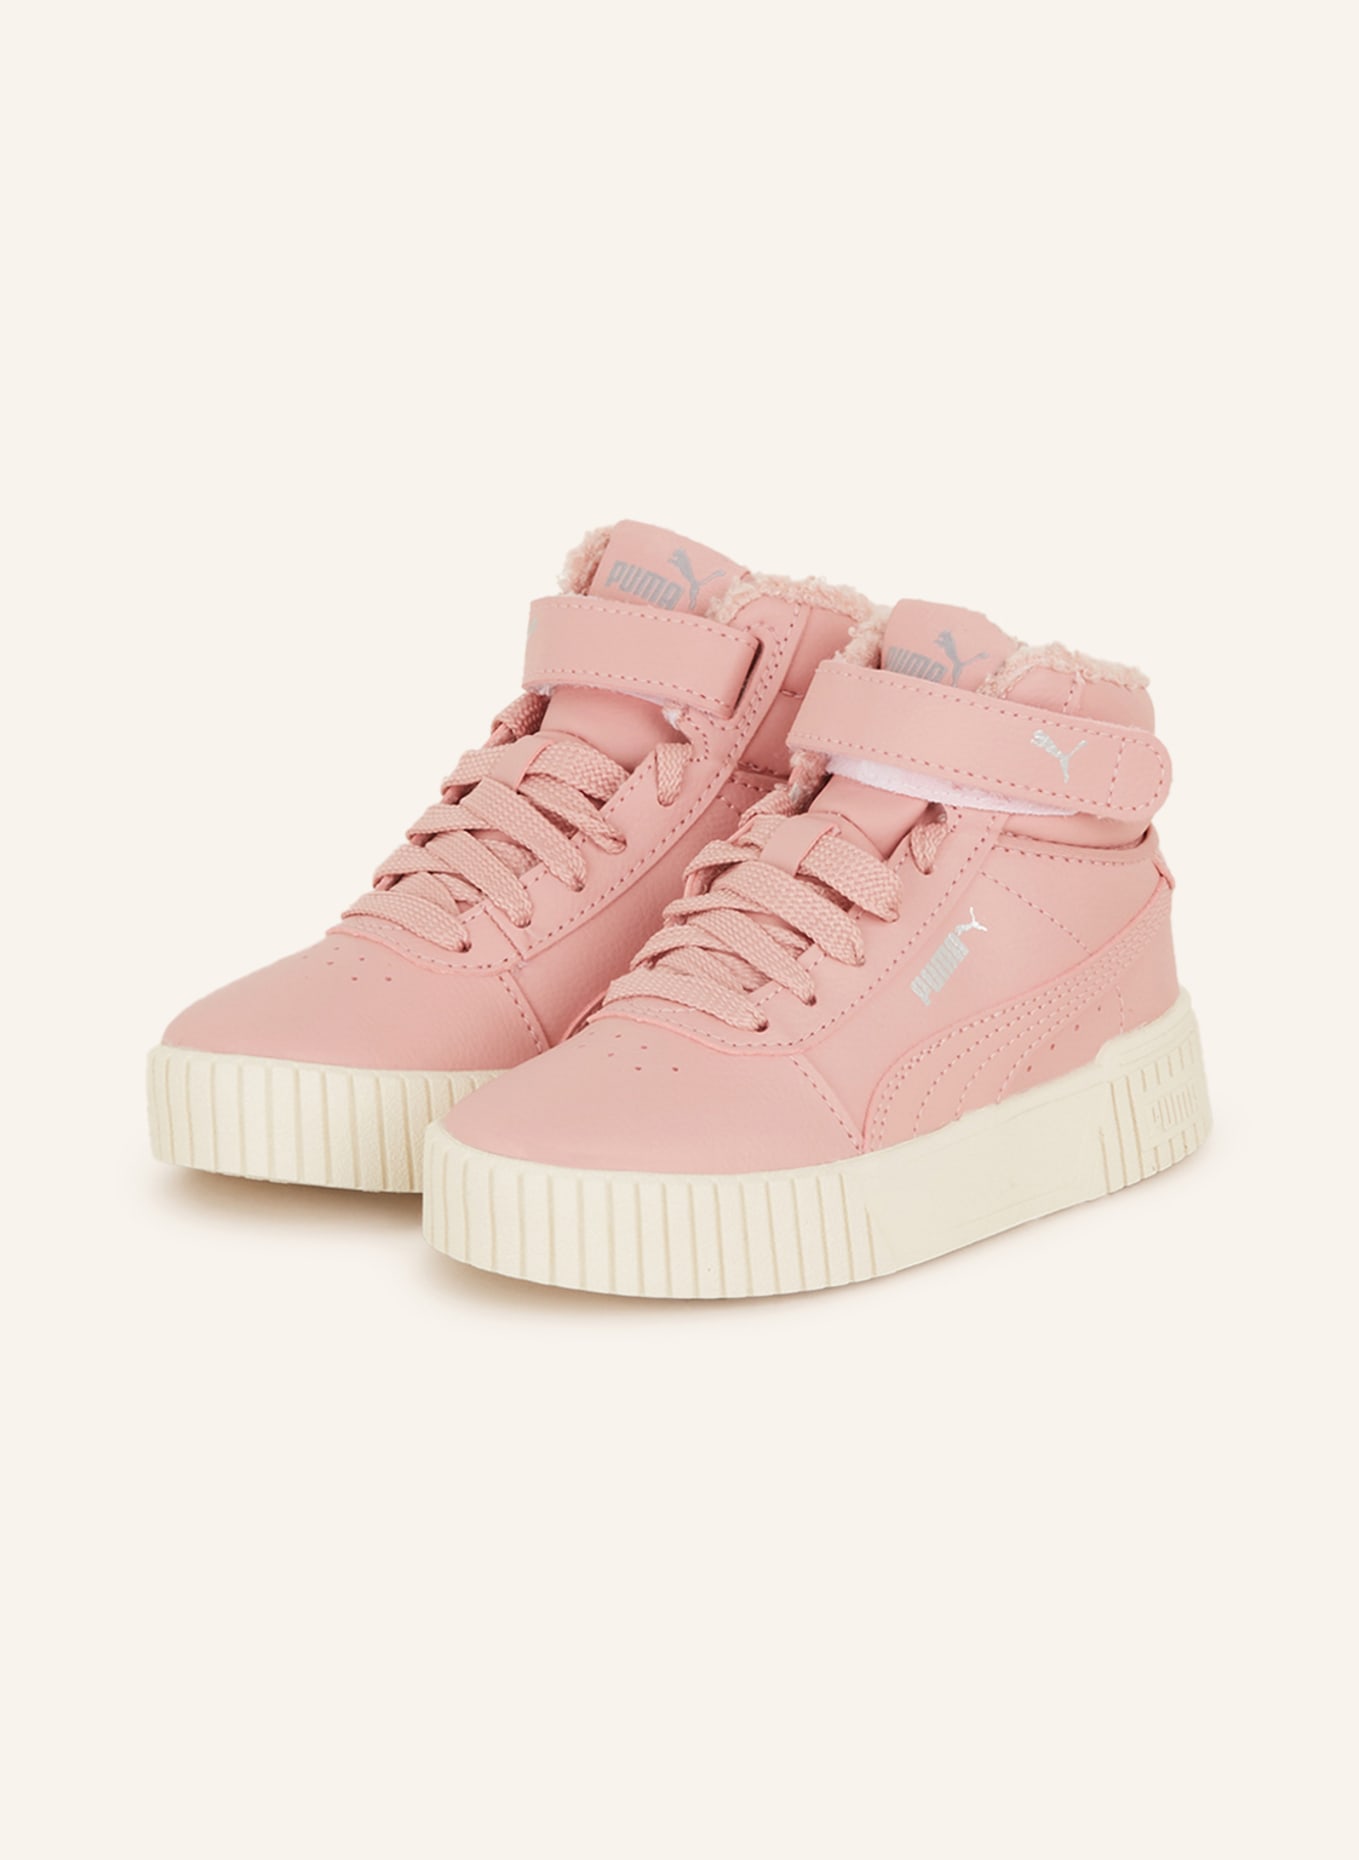 PUMA Hightop-Sneaker CARINA in 2.0 pink